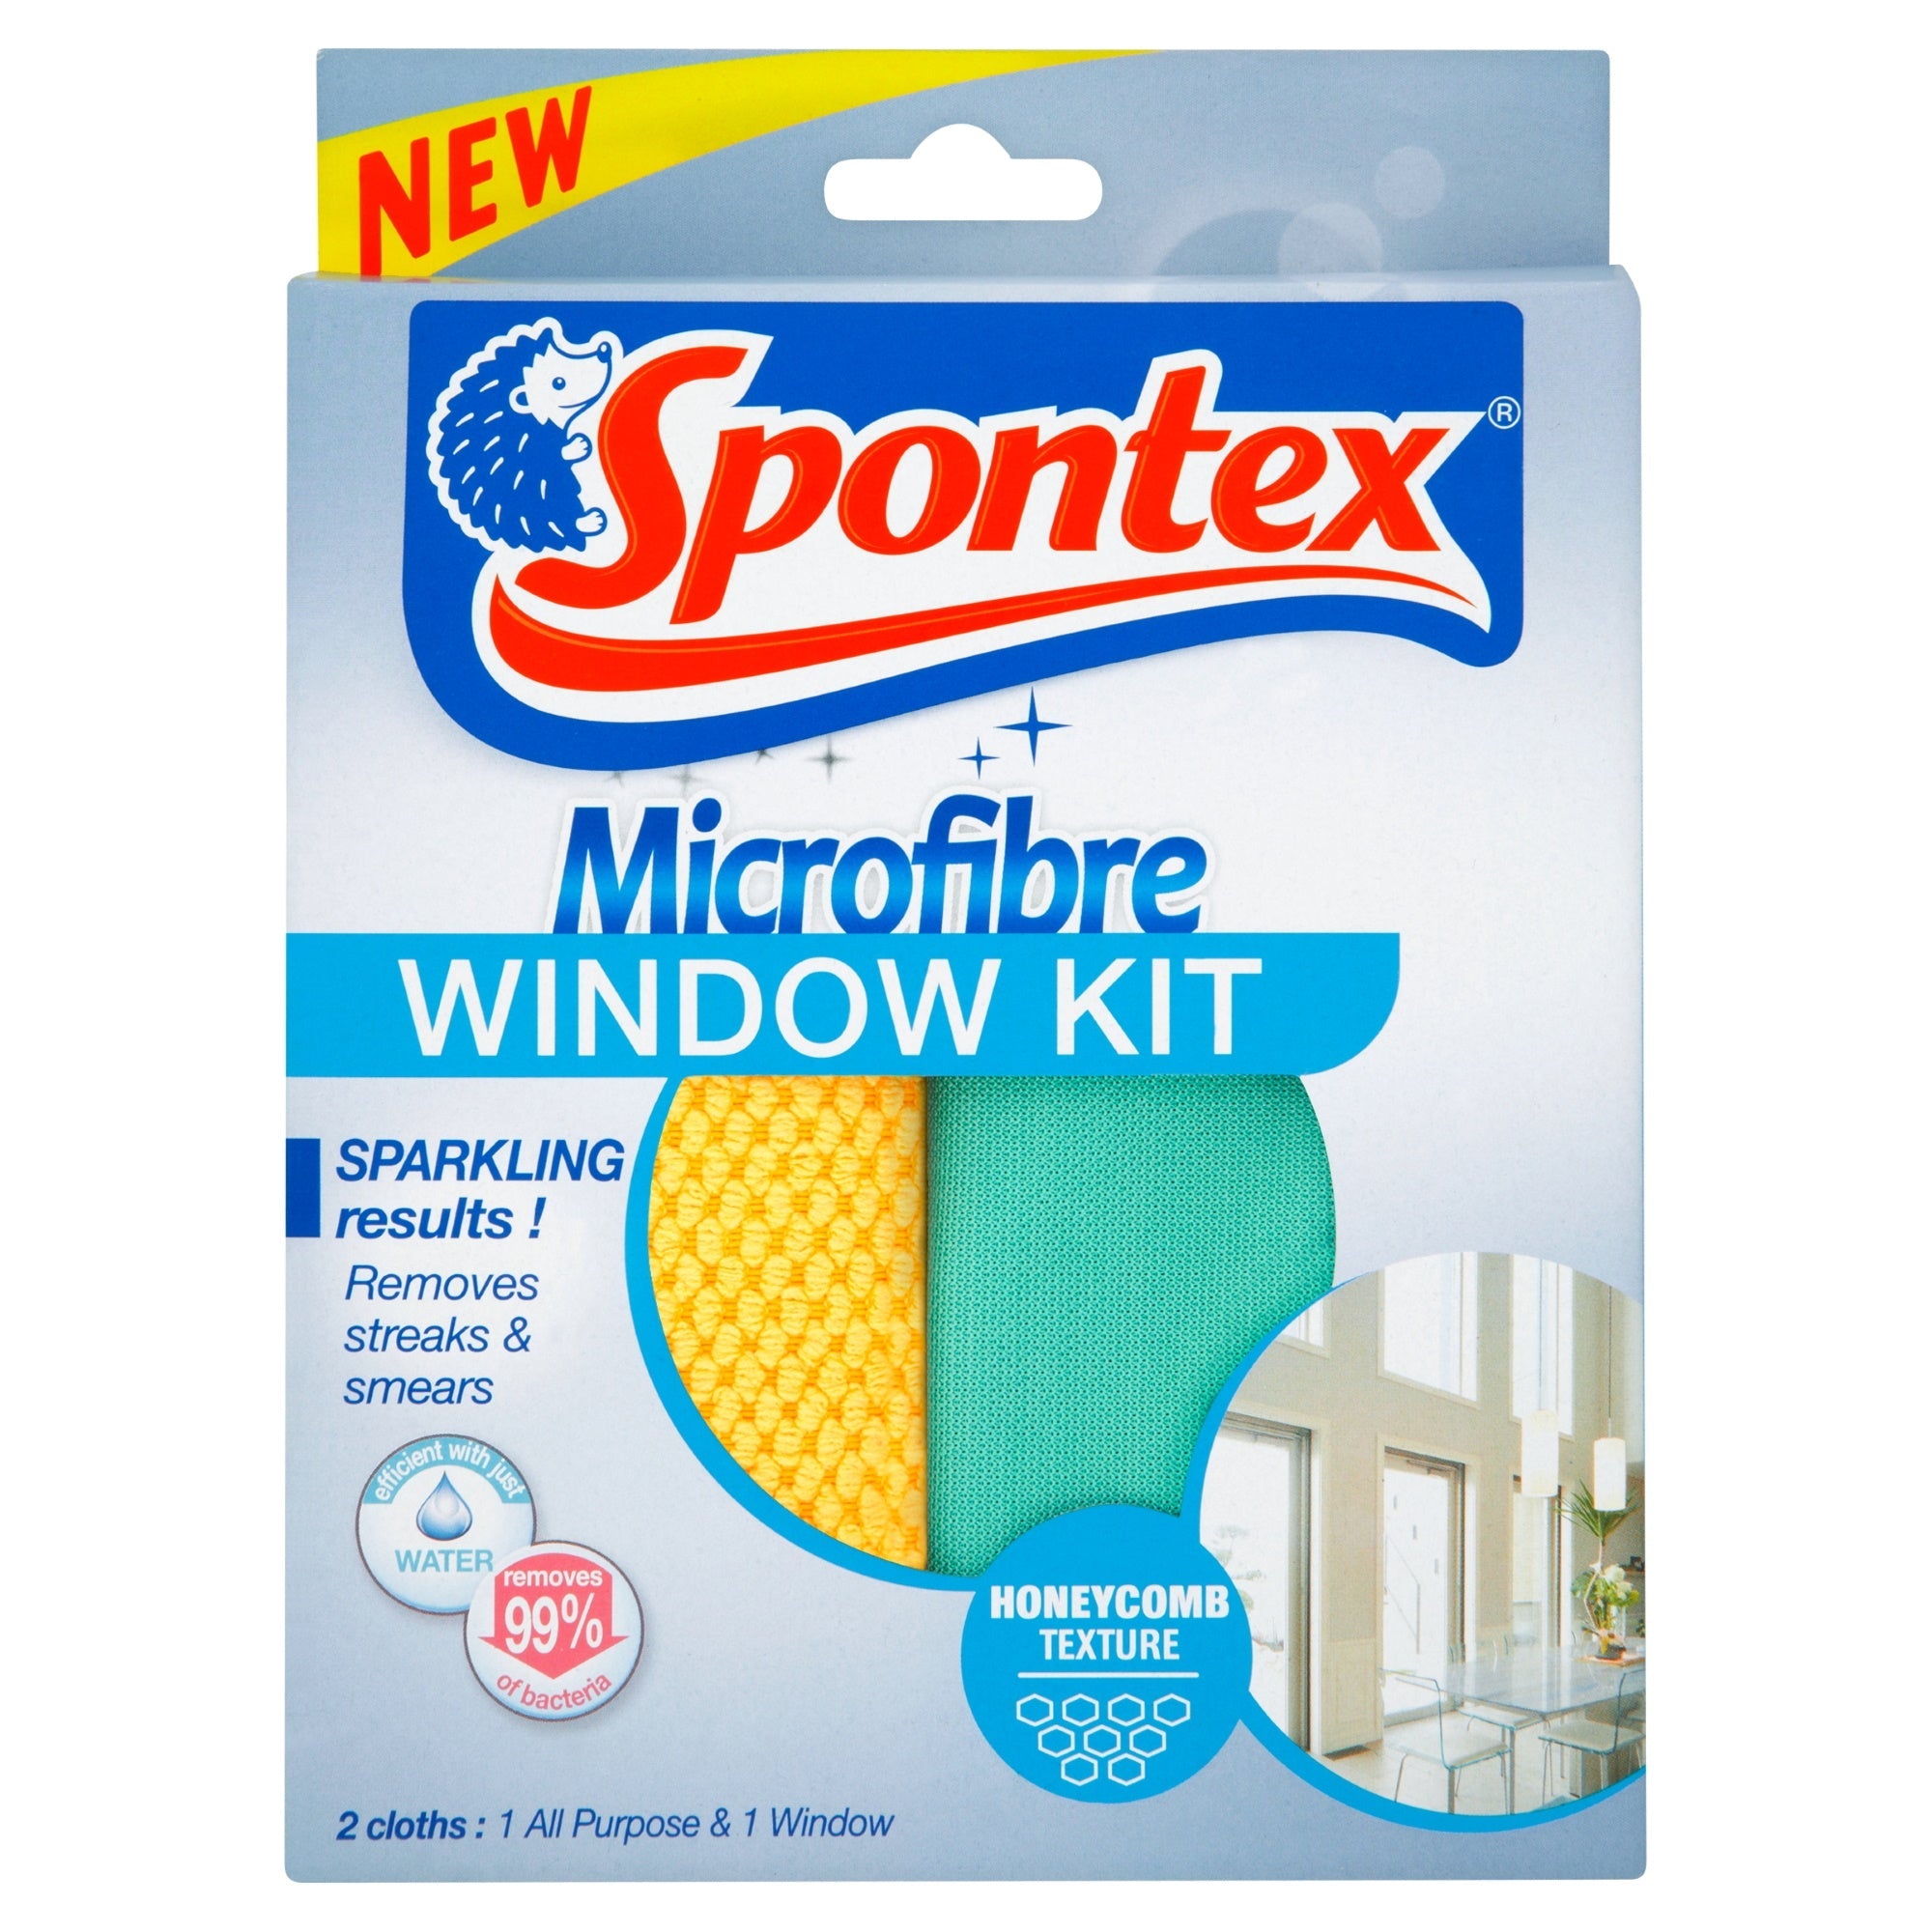 Spontex Microfibre Cloths Value Pack 8 per pack